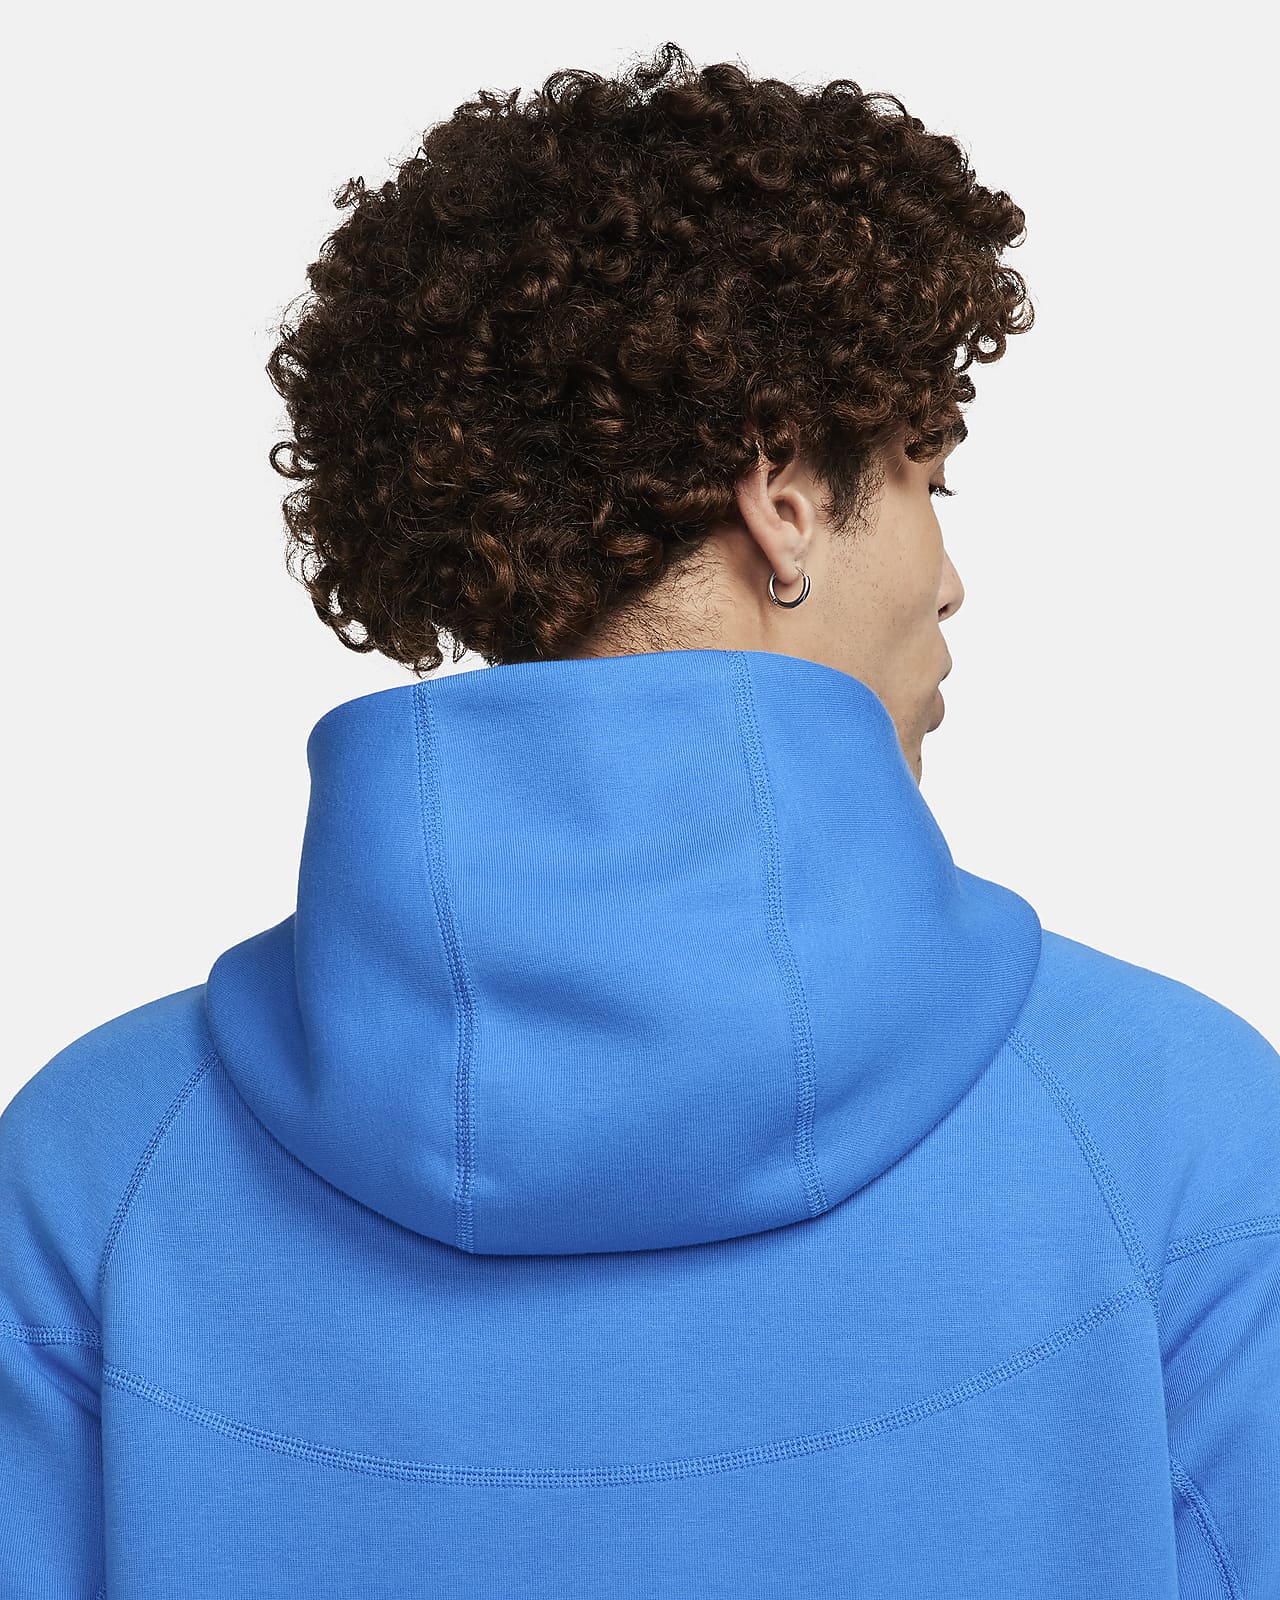 Nike Tech Fleece Pro Therma-FIT Full Zip Jacket MEN'S Size S, M, L Grey